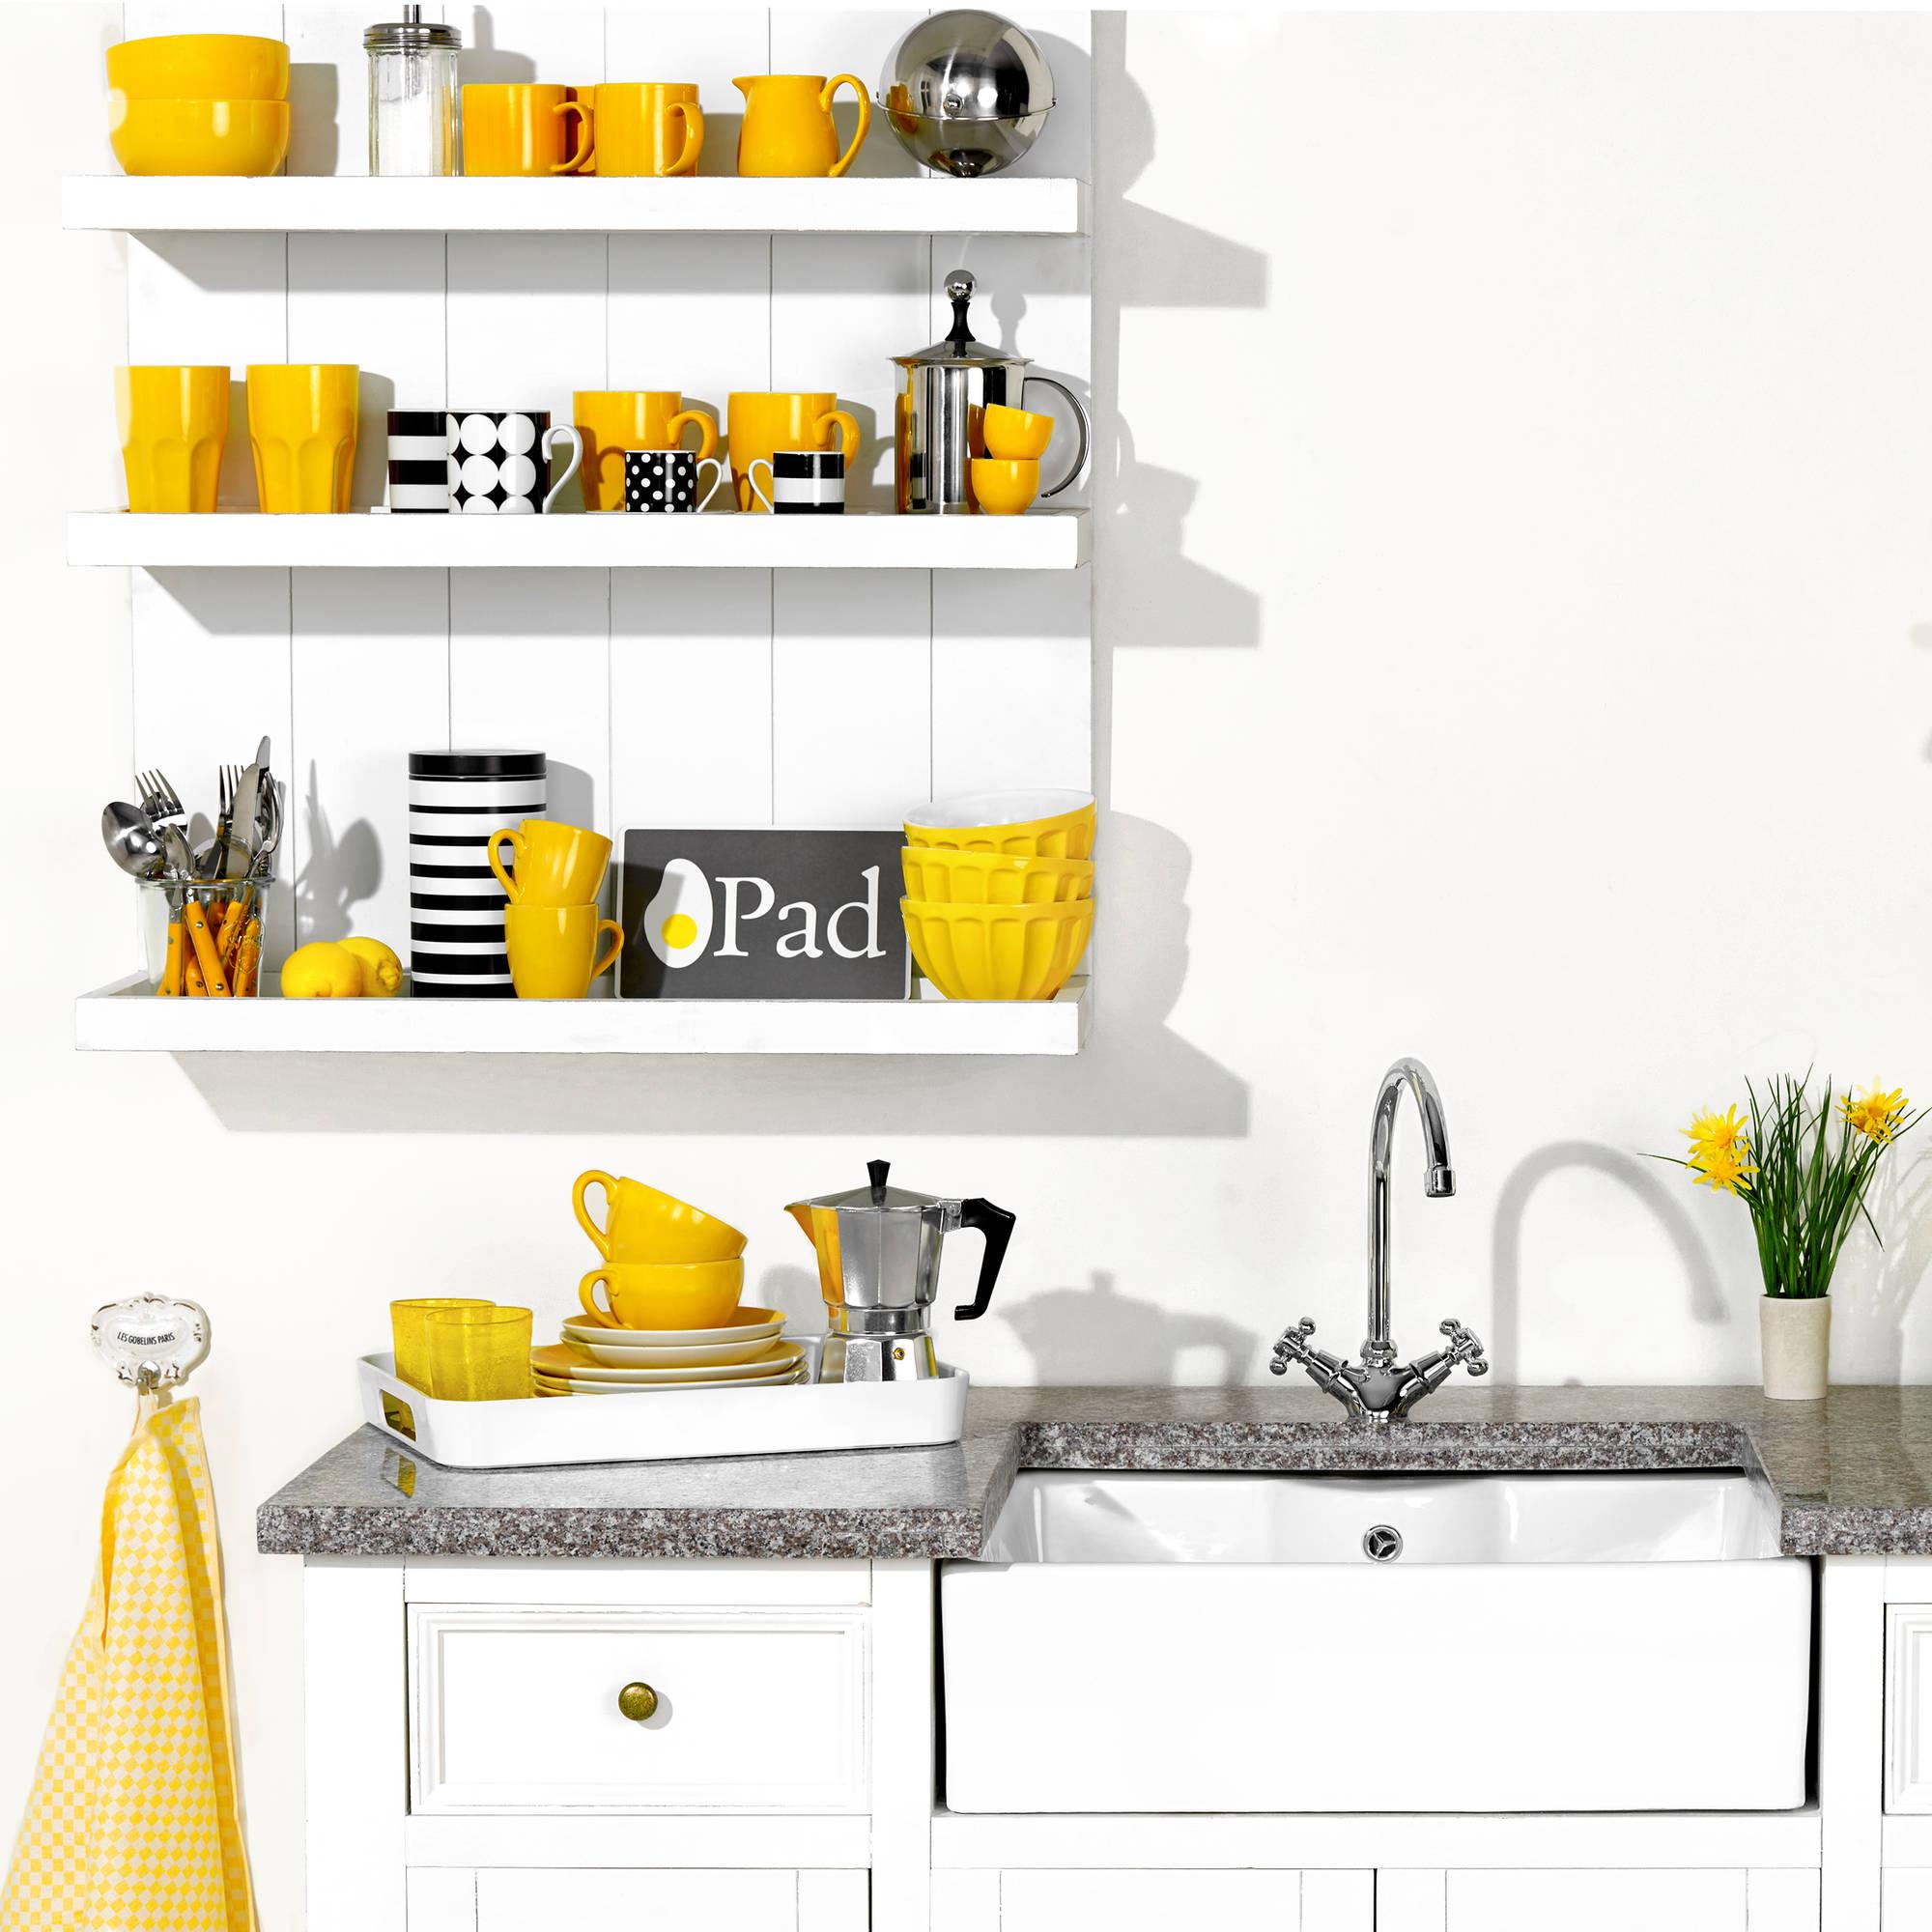 Gelbe Dekoelemente sorgen für Farbtupfer in der Küche #küche ©Butlers